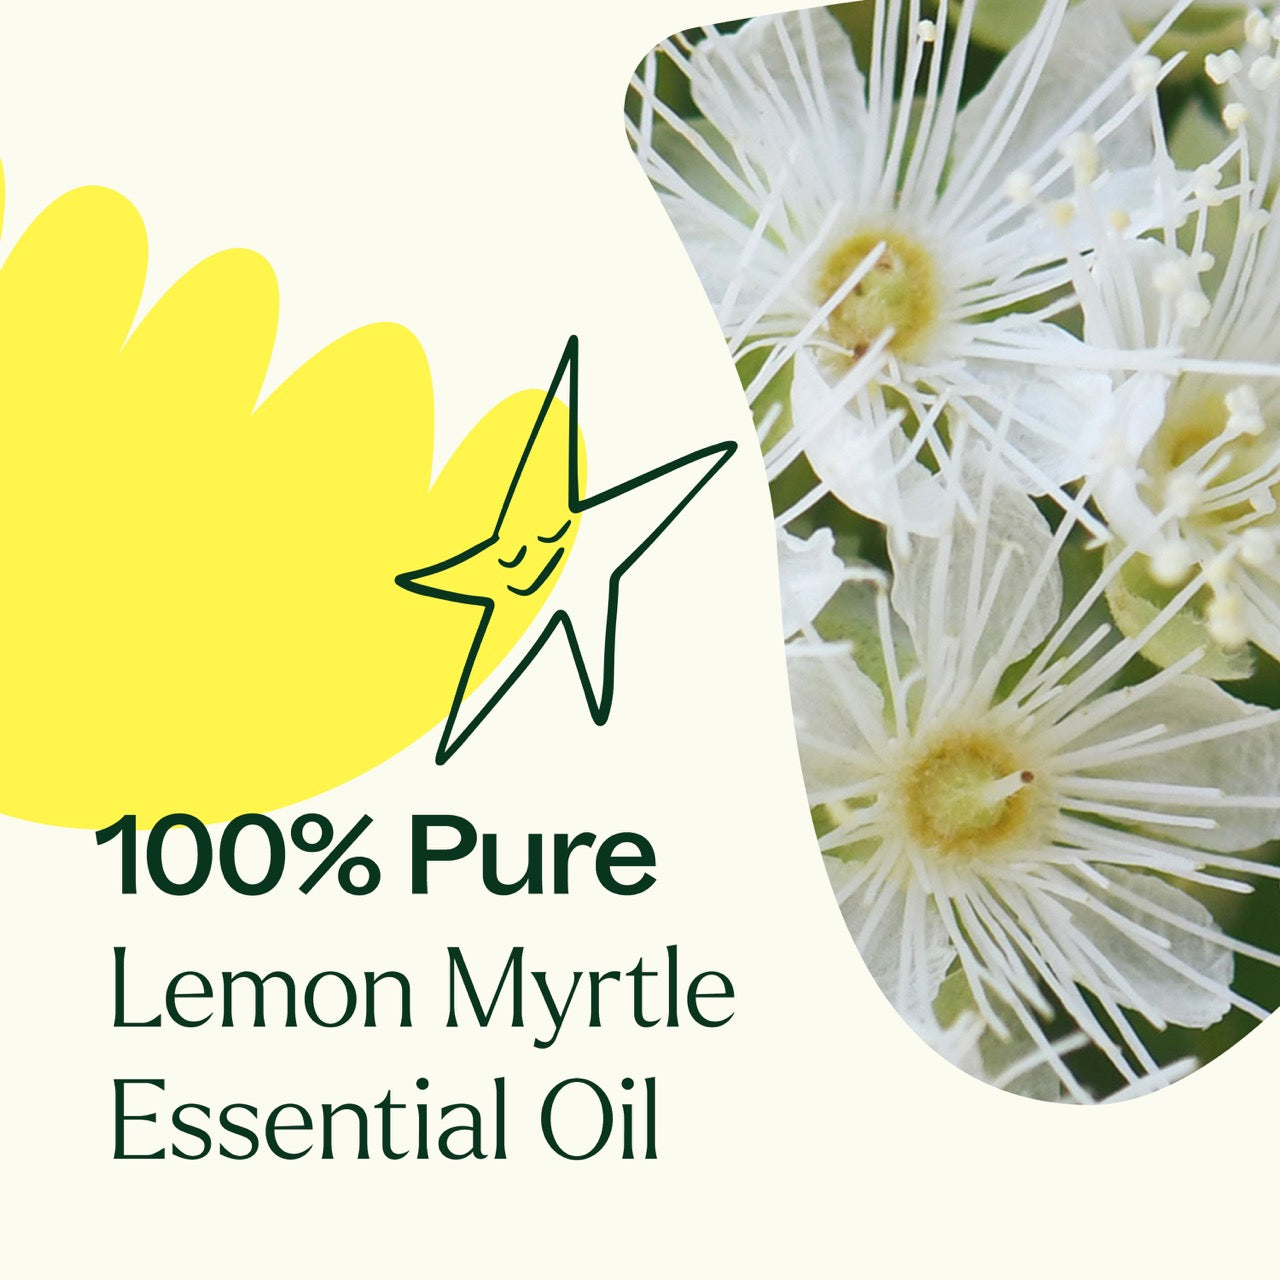 100% pure Lemon Myrtle Essential Oil